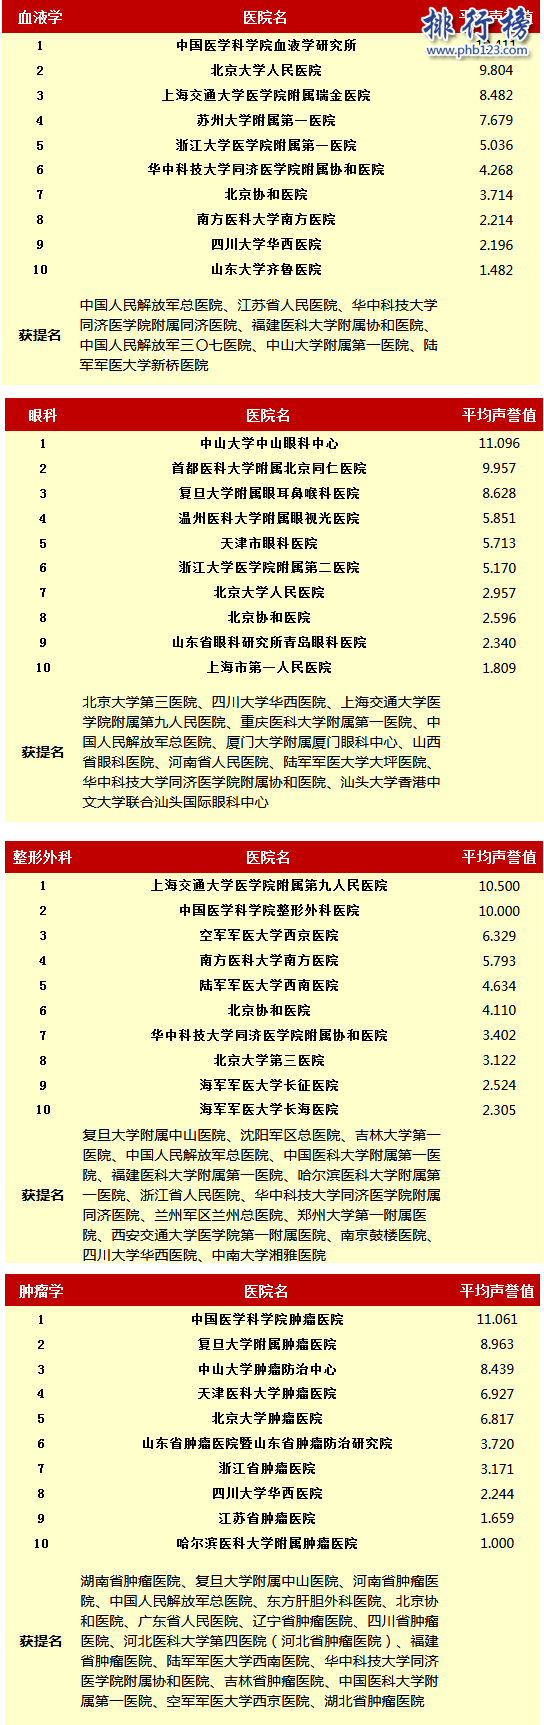 2016中國專科醫院排行榜:北京協和登頂,華西醫院第二(完整榜單)